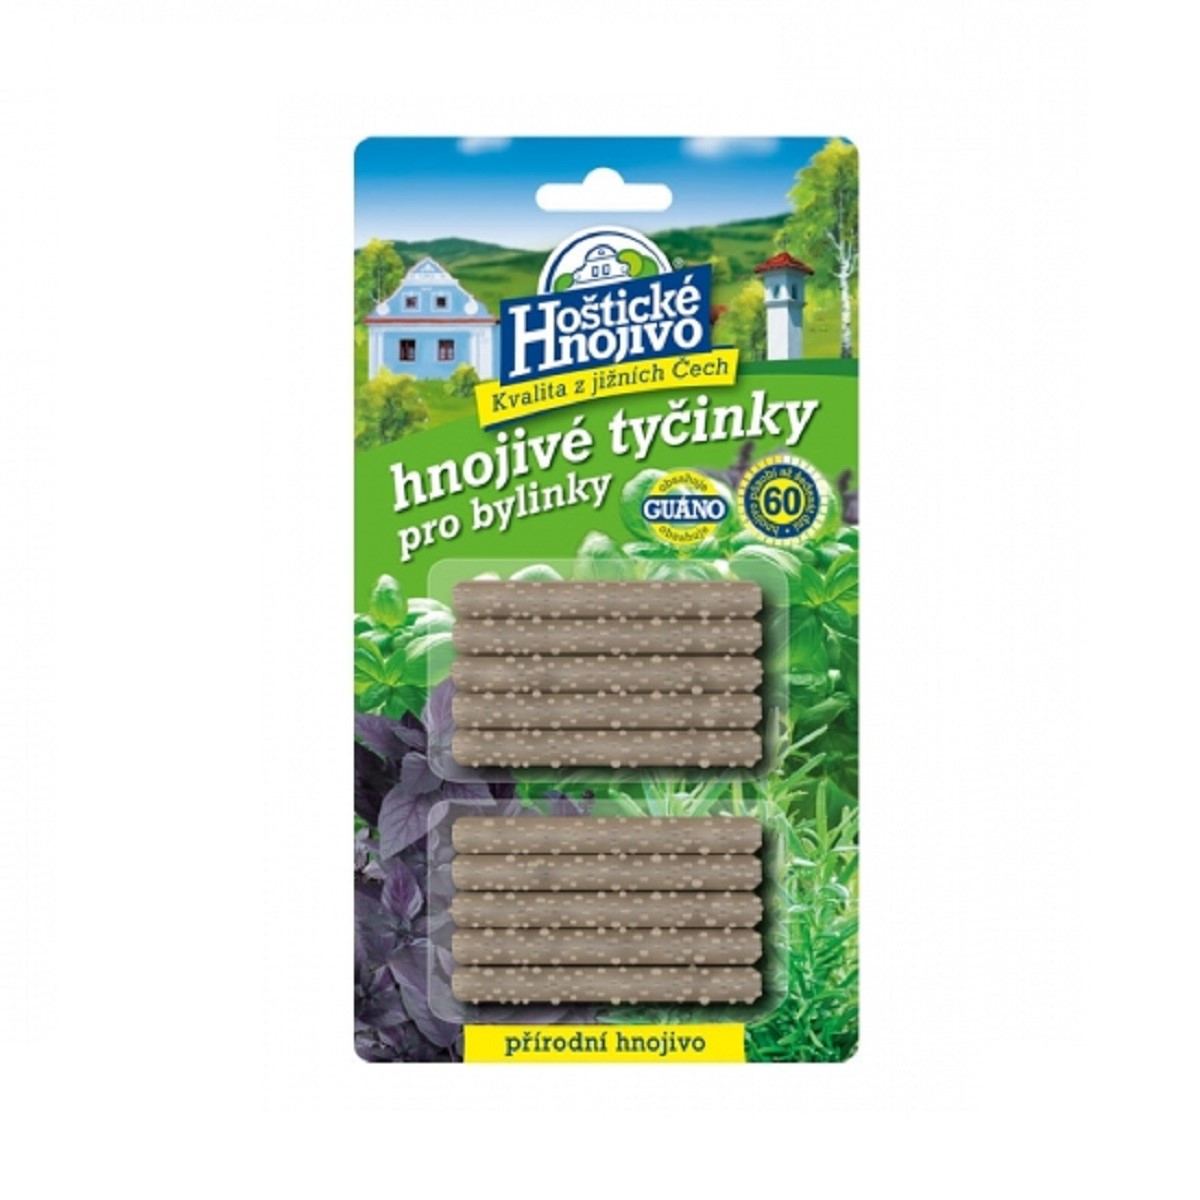 Tyčinky pro bylinky - Hoštické hnojivo - prodej hnojiv - 10 ks